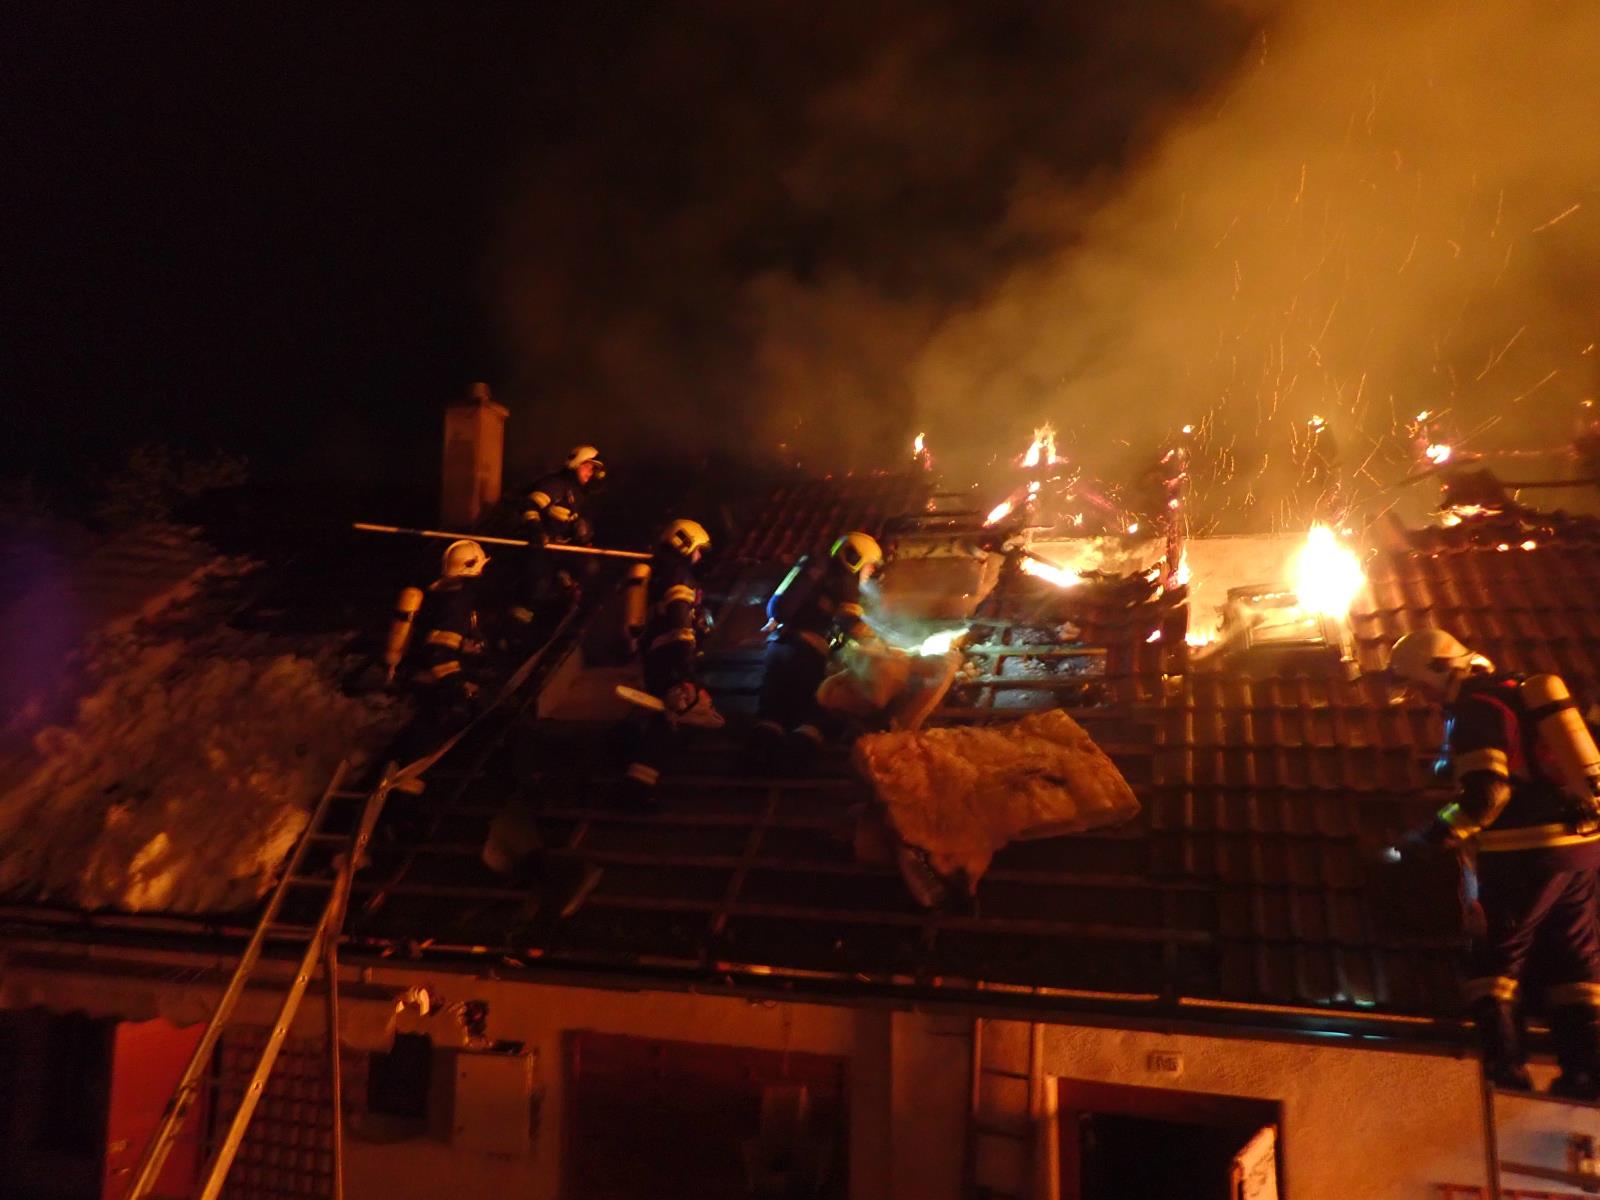 ZLK_Požár hospodářské budovy ve Vizovicích_plameny zasažená střecha a zasahující hasiči na ní.jpg